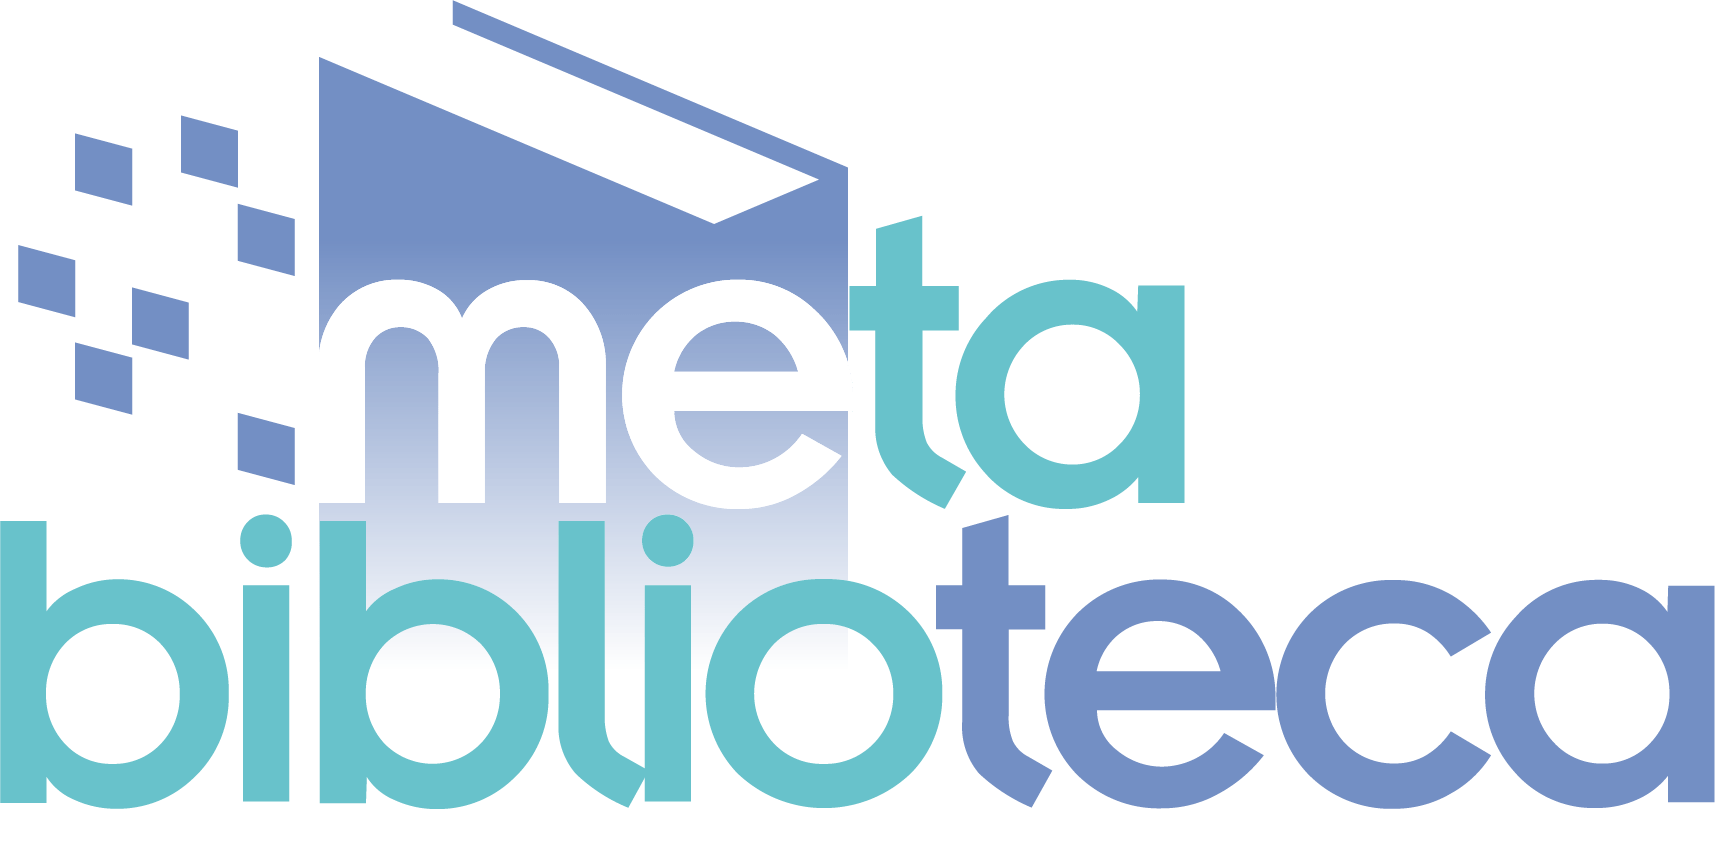 Sitio web Metabiblioteca